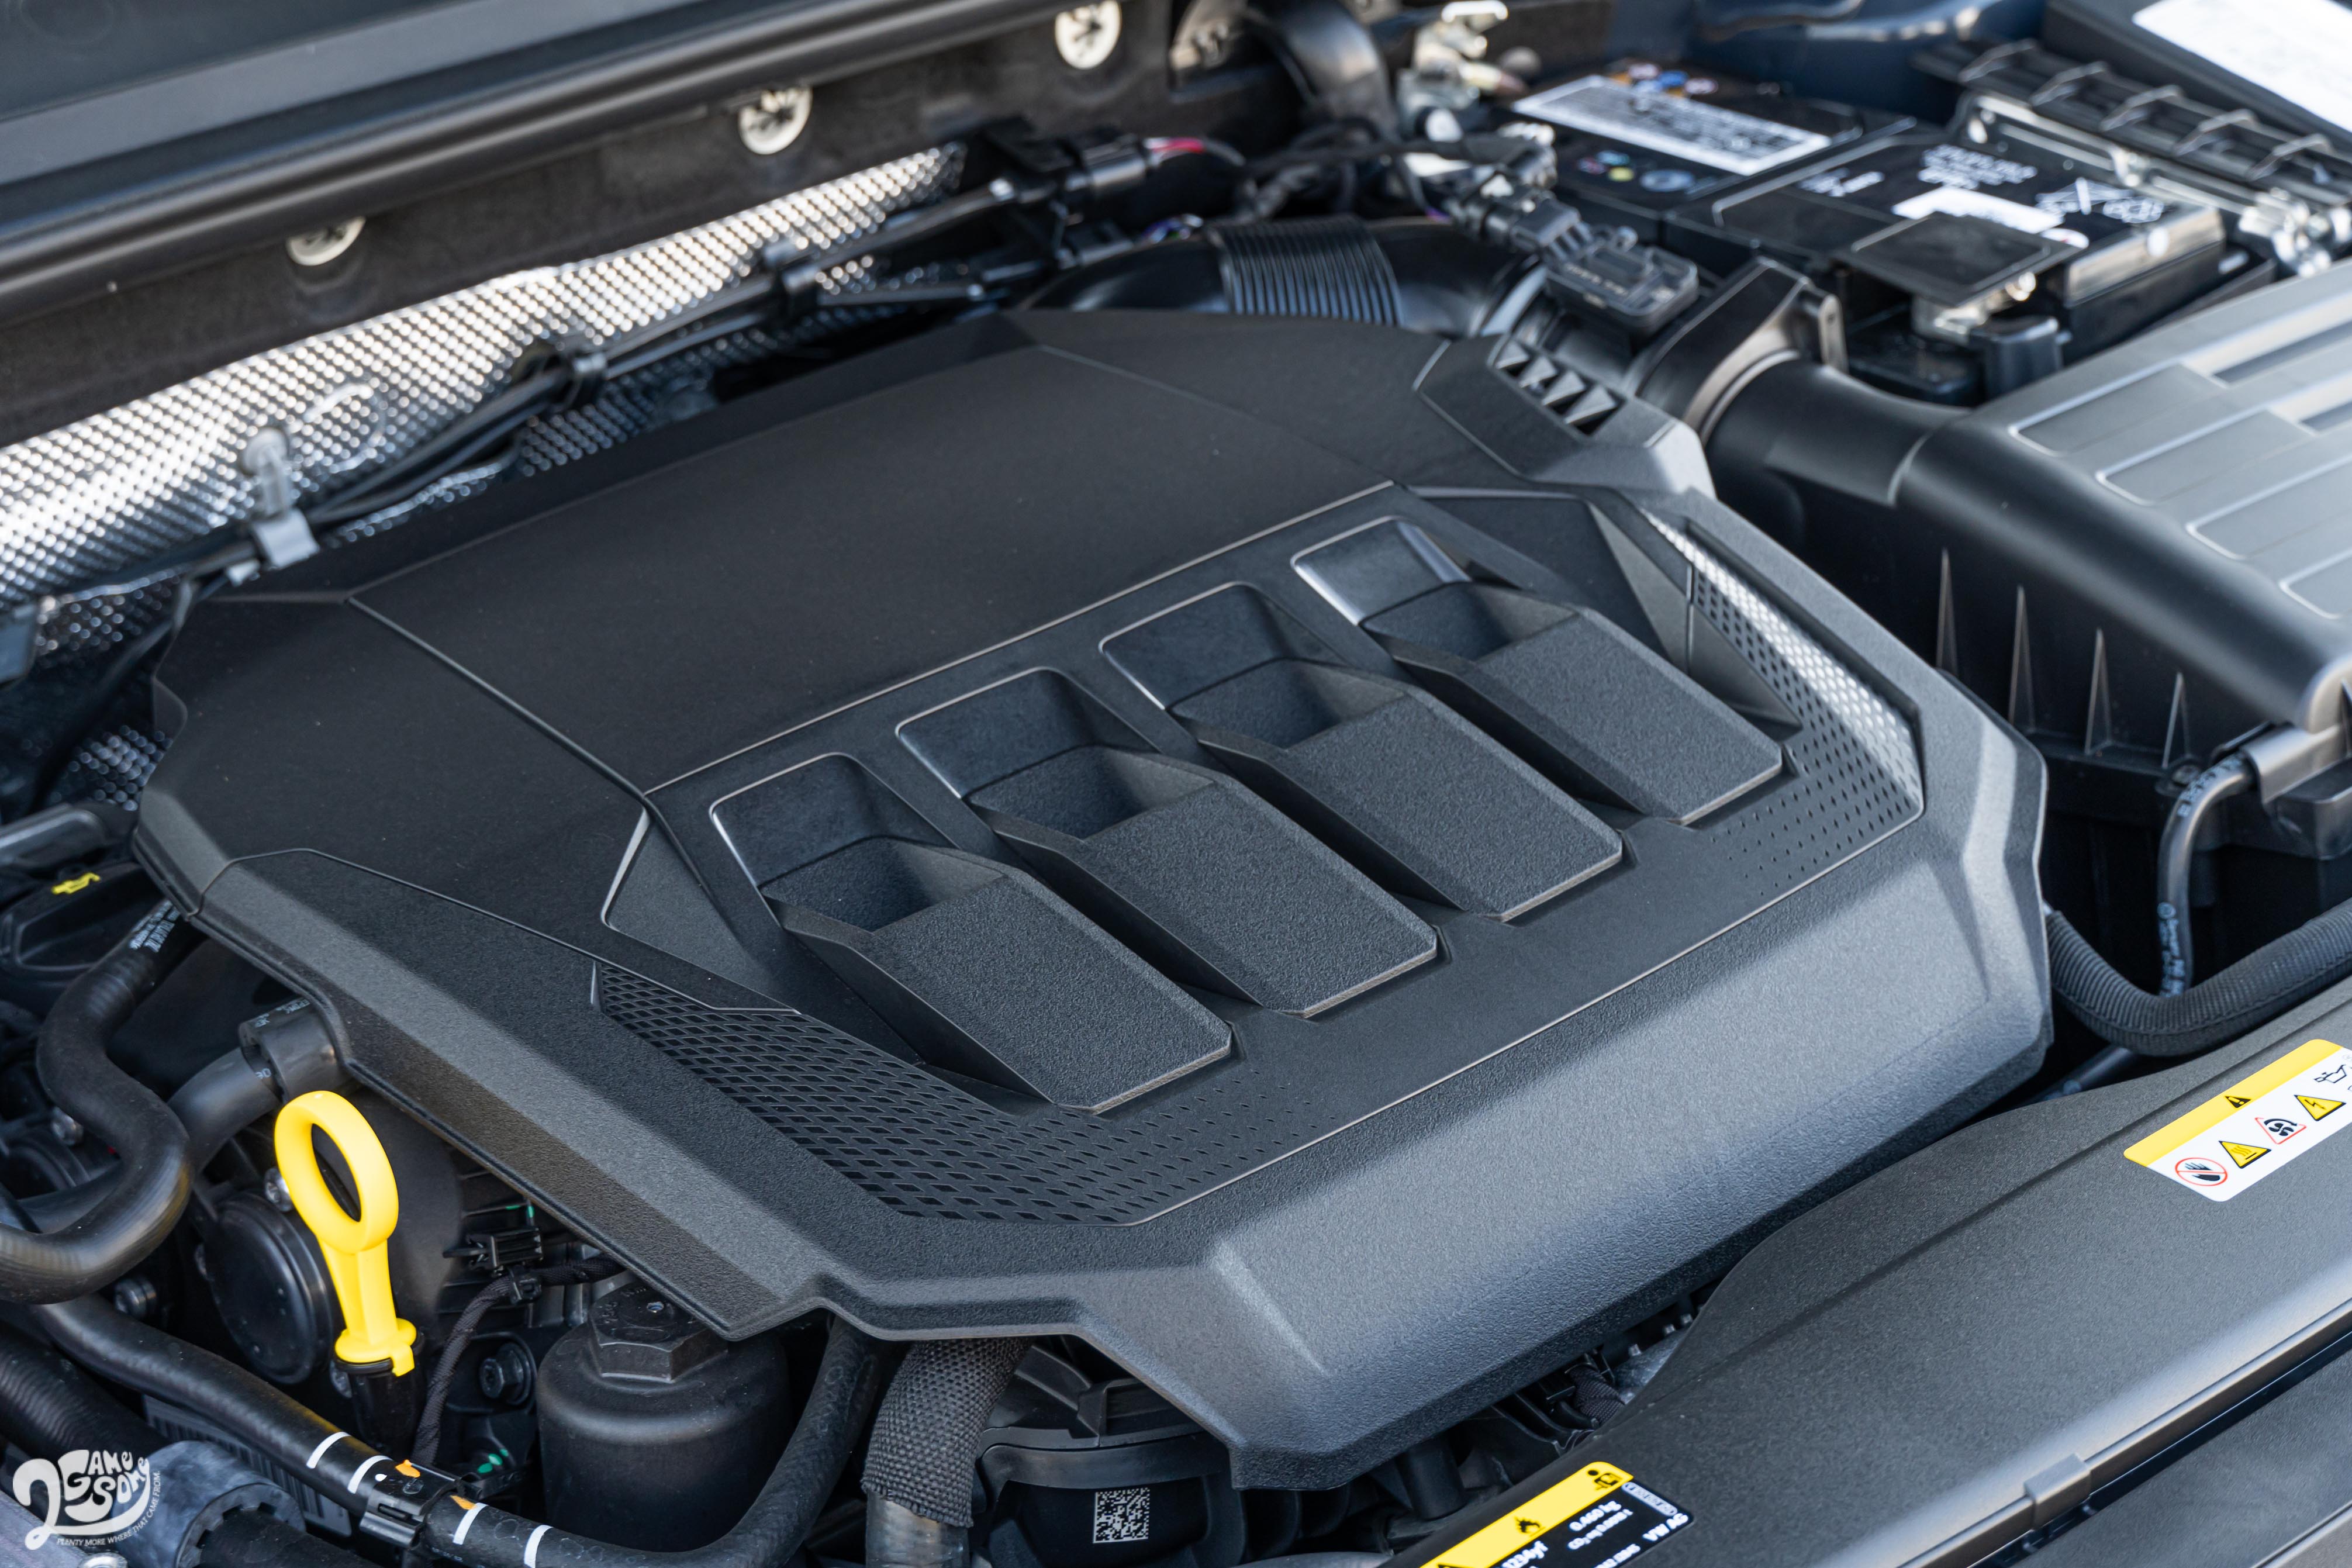 Arteon Fastback 330 TSI 搭載 2.0 升渦輪增壓汽油引擎，具備 190ps / 4200~6000rpm 最大馬力，與 32.6kgm / 1500~4100rpm 最大扭力輸出。